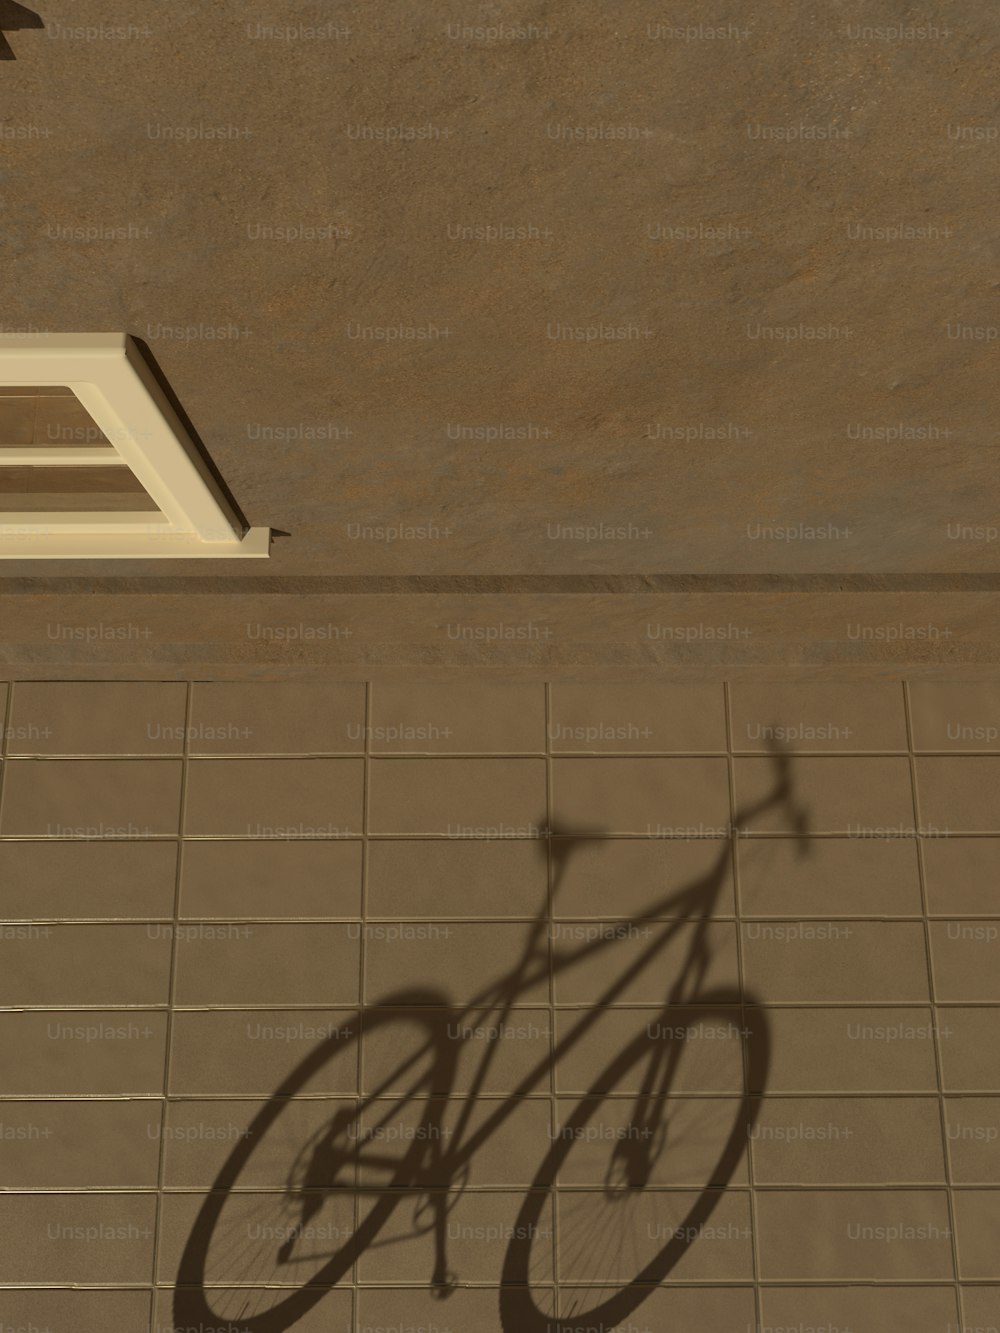 La sombra de una bicicleta en un suelo de baldosas